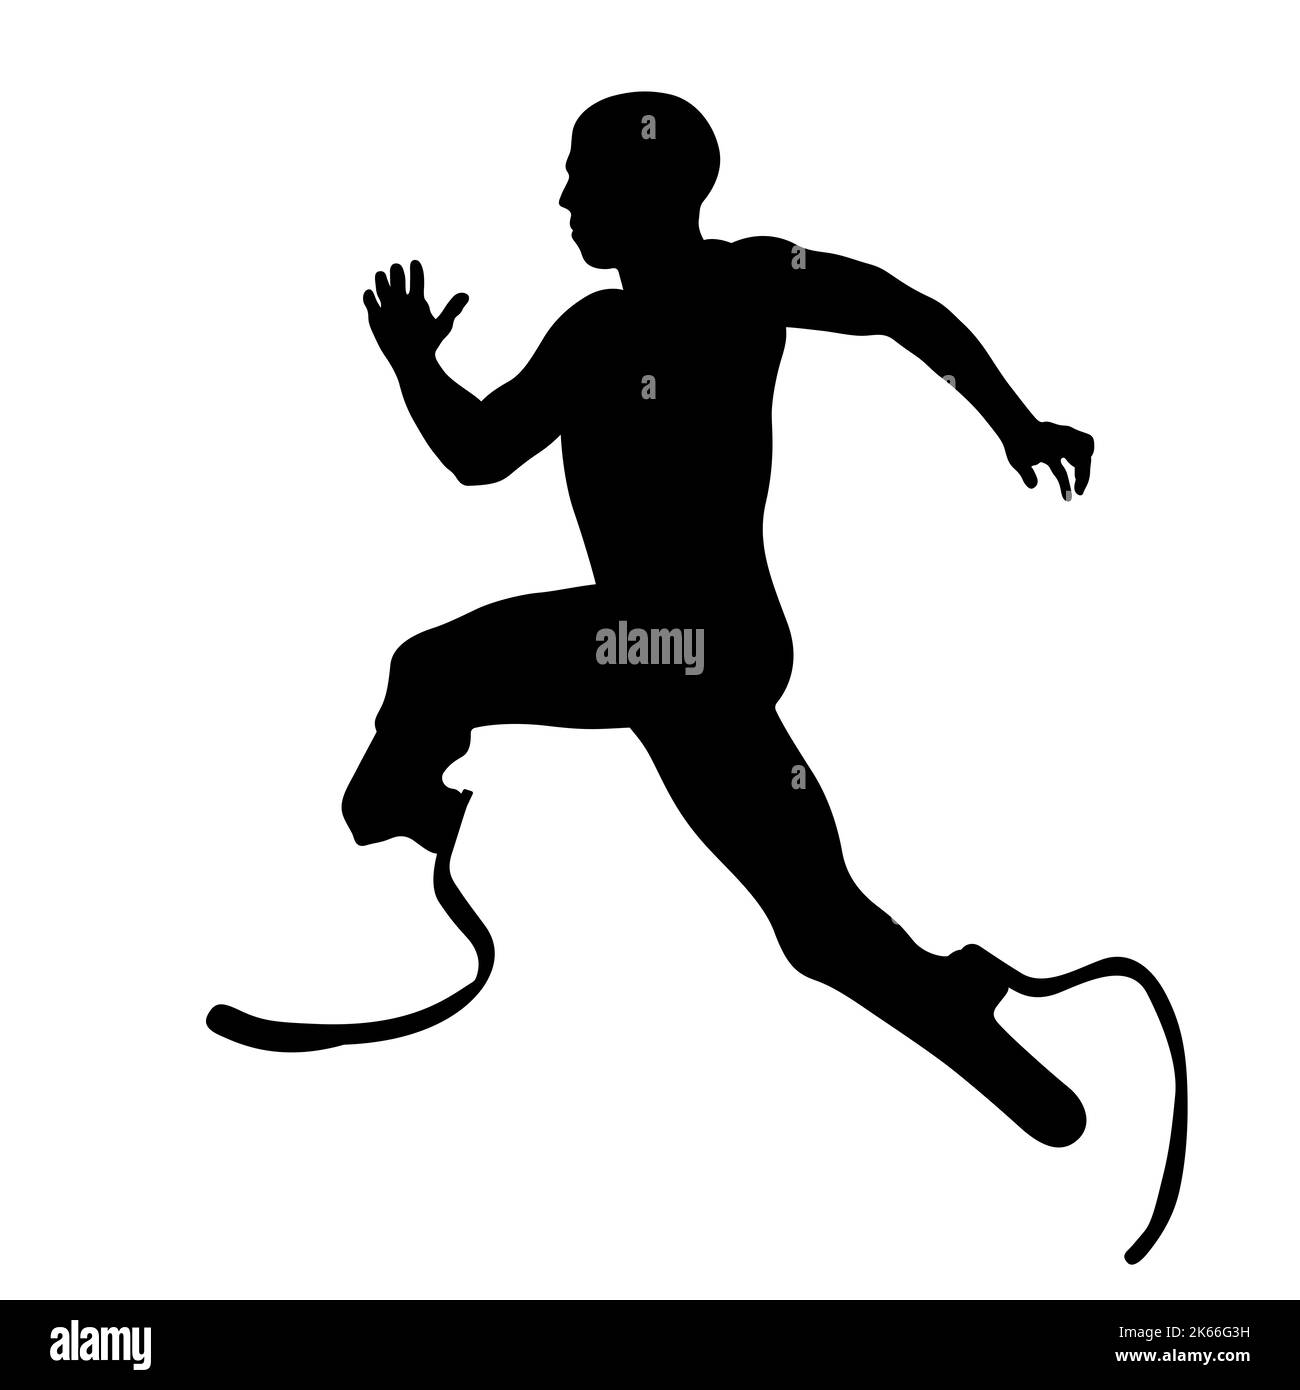 disabled runner on prosthetics running black silhouette Stock Photo